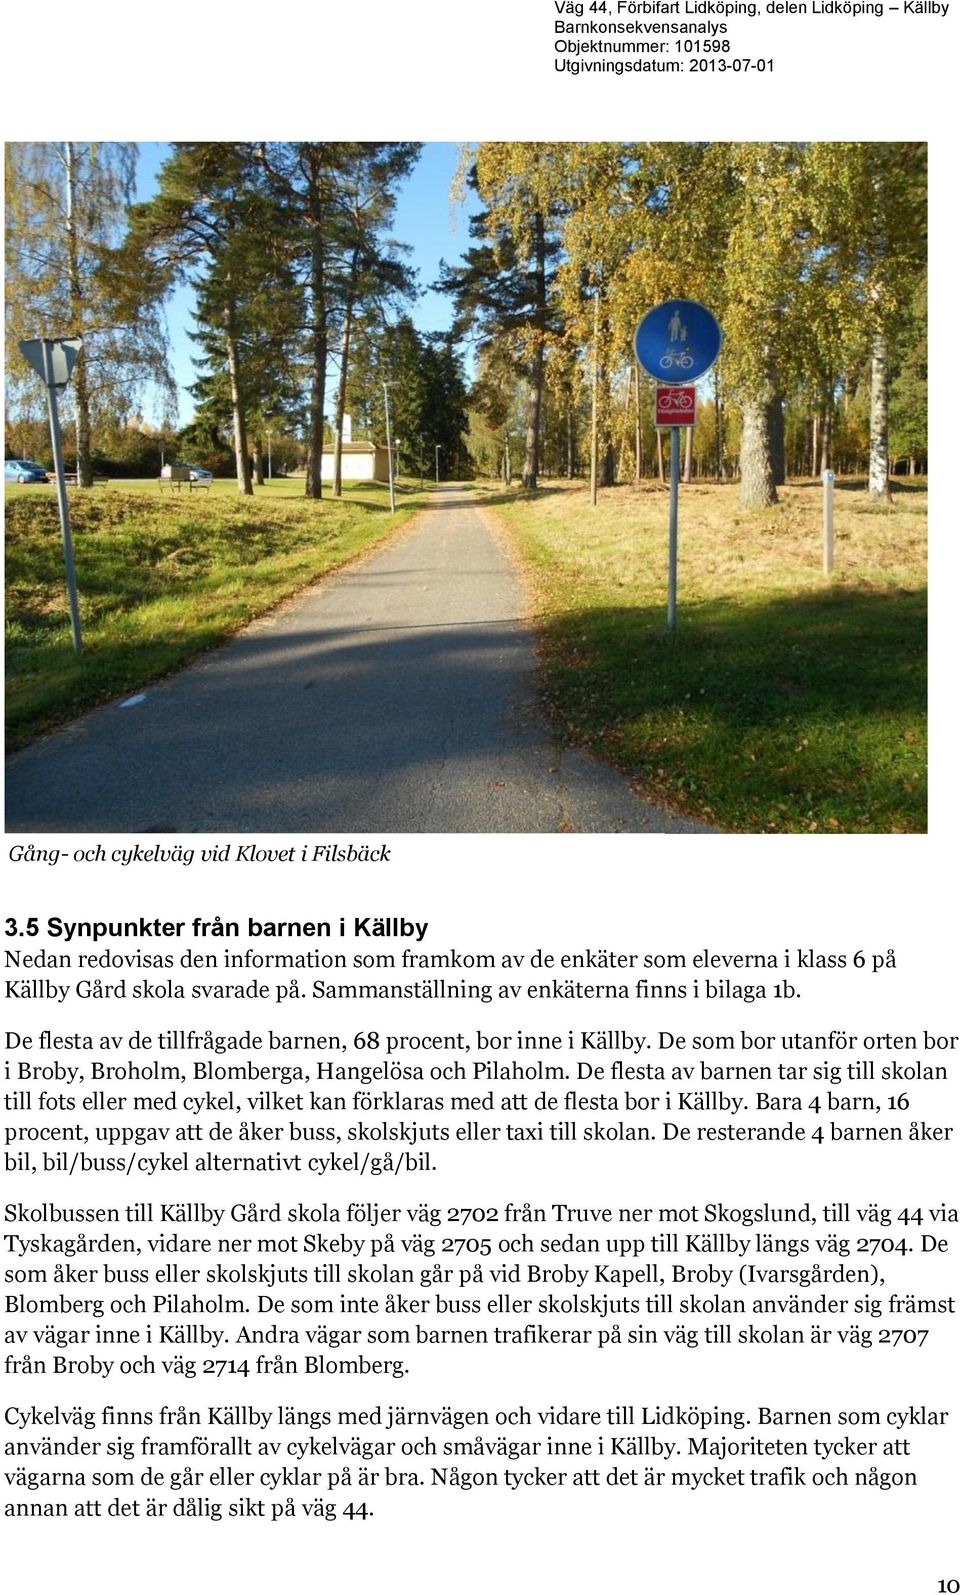 De flesta av barnen tar sig till skolan till fots eller med cykel, vilket kan förklaras med att de flesta bor i Källby.